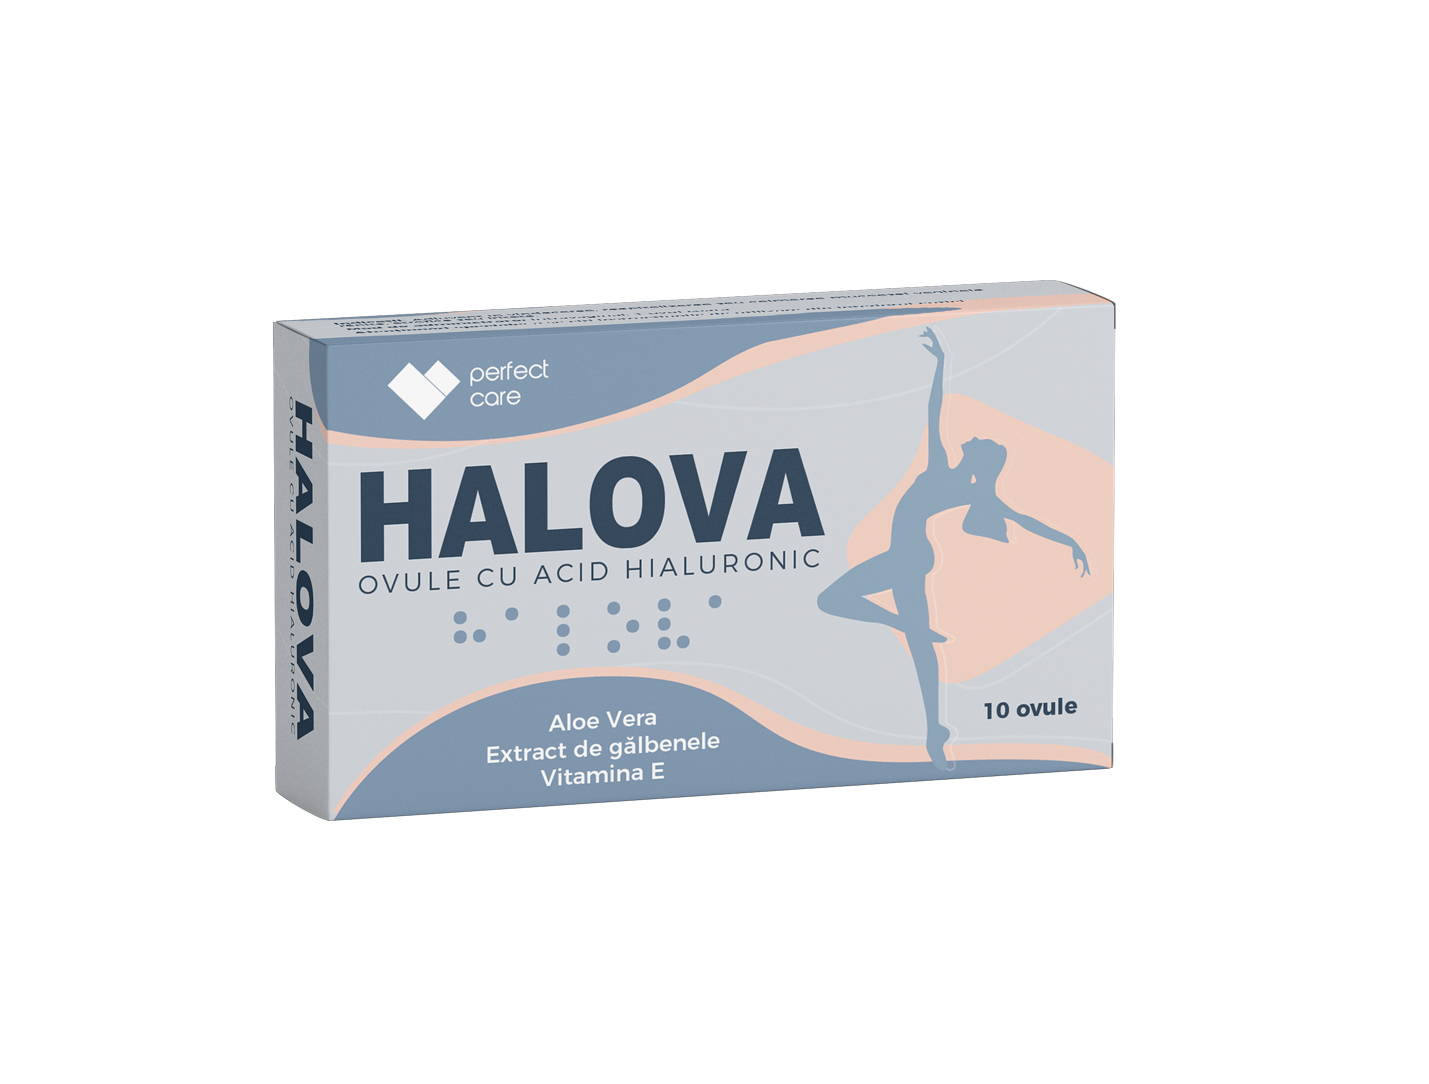 Tratamente - Halova 10 ovule cu acid hialuronic, Perfect care, sinapis.ro